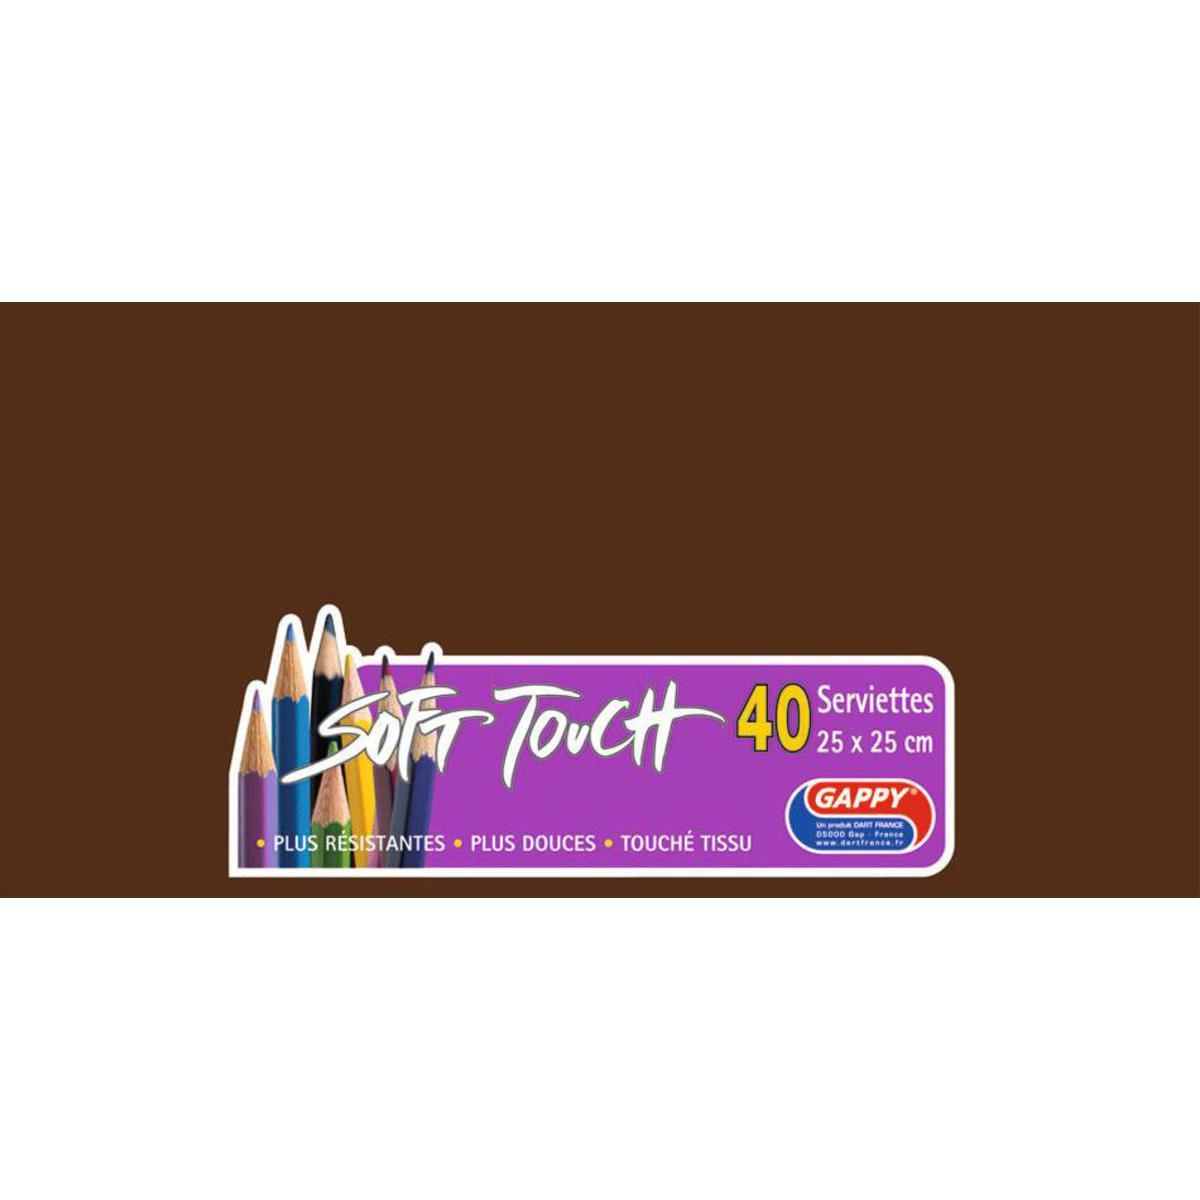 Lot de 40 serviettes Soft Touch - 25 x 25 cm - Pure Ouate de Cellulose - Marron